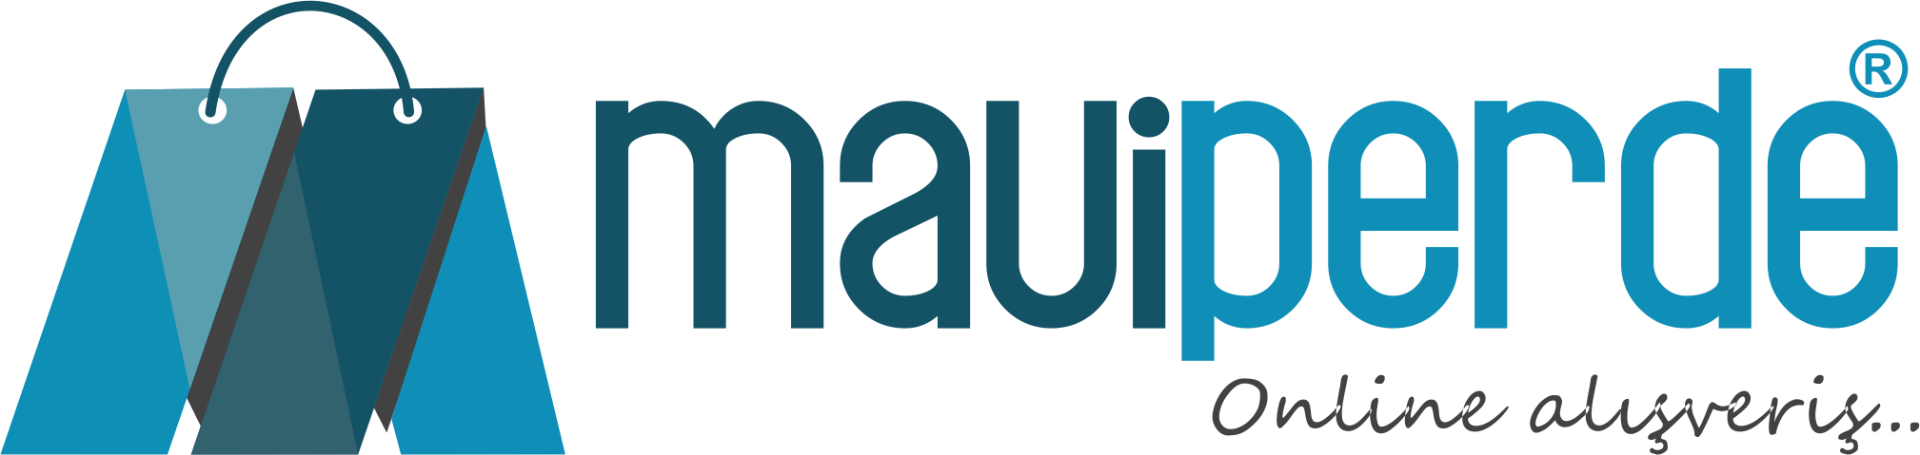 maviperde.com logo